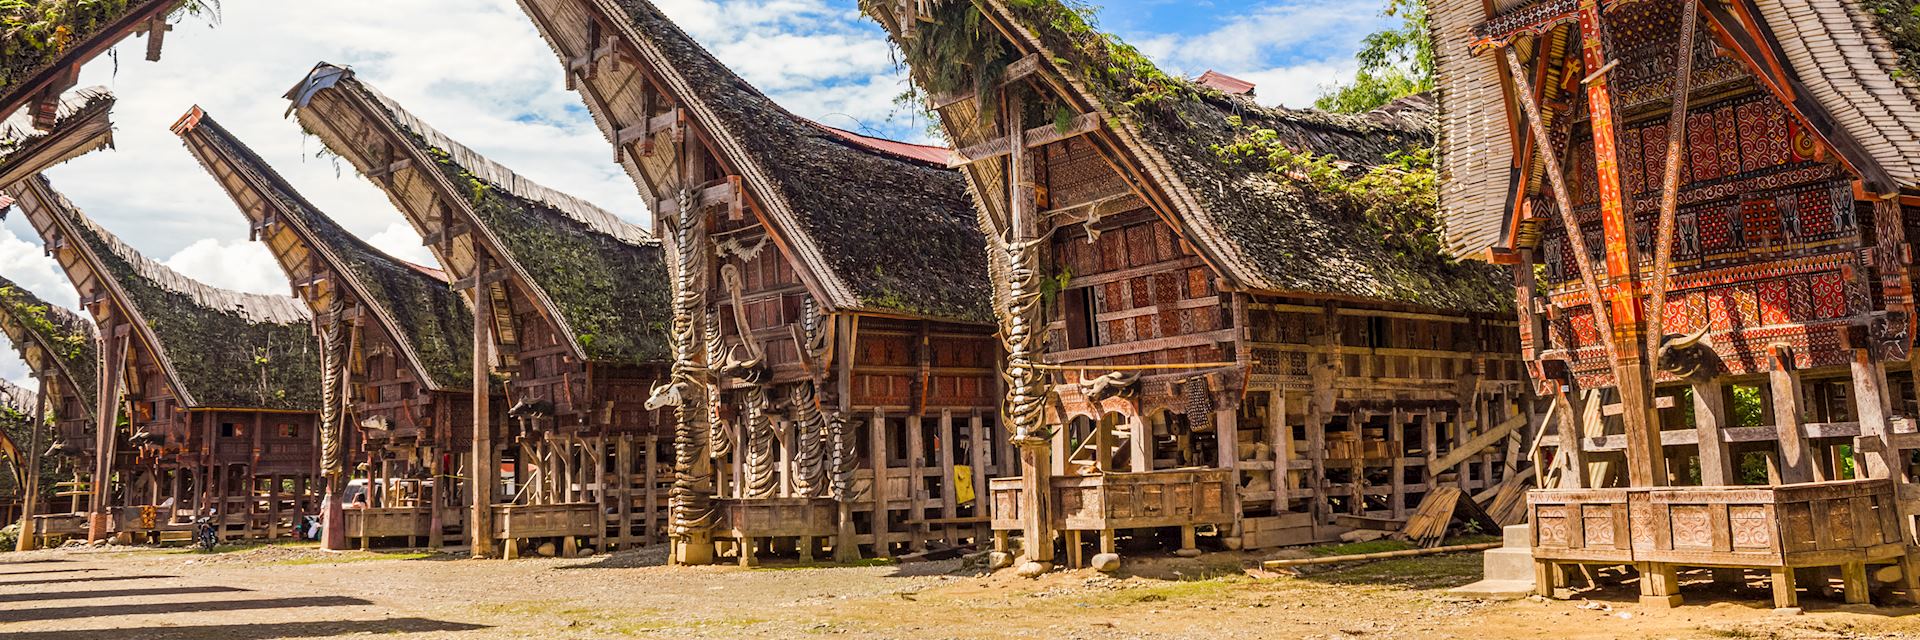 Tongkonan houses, Tana Toraja